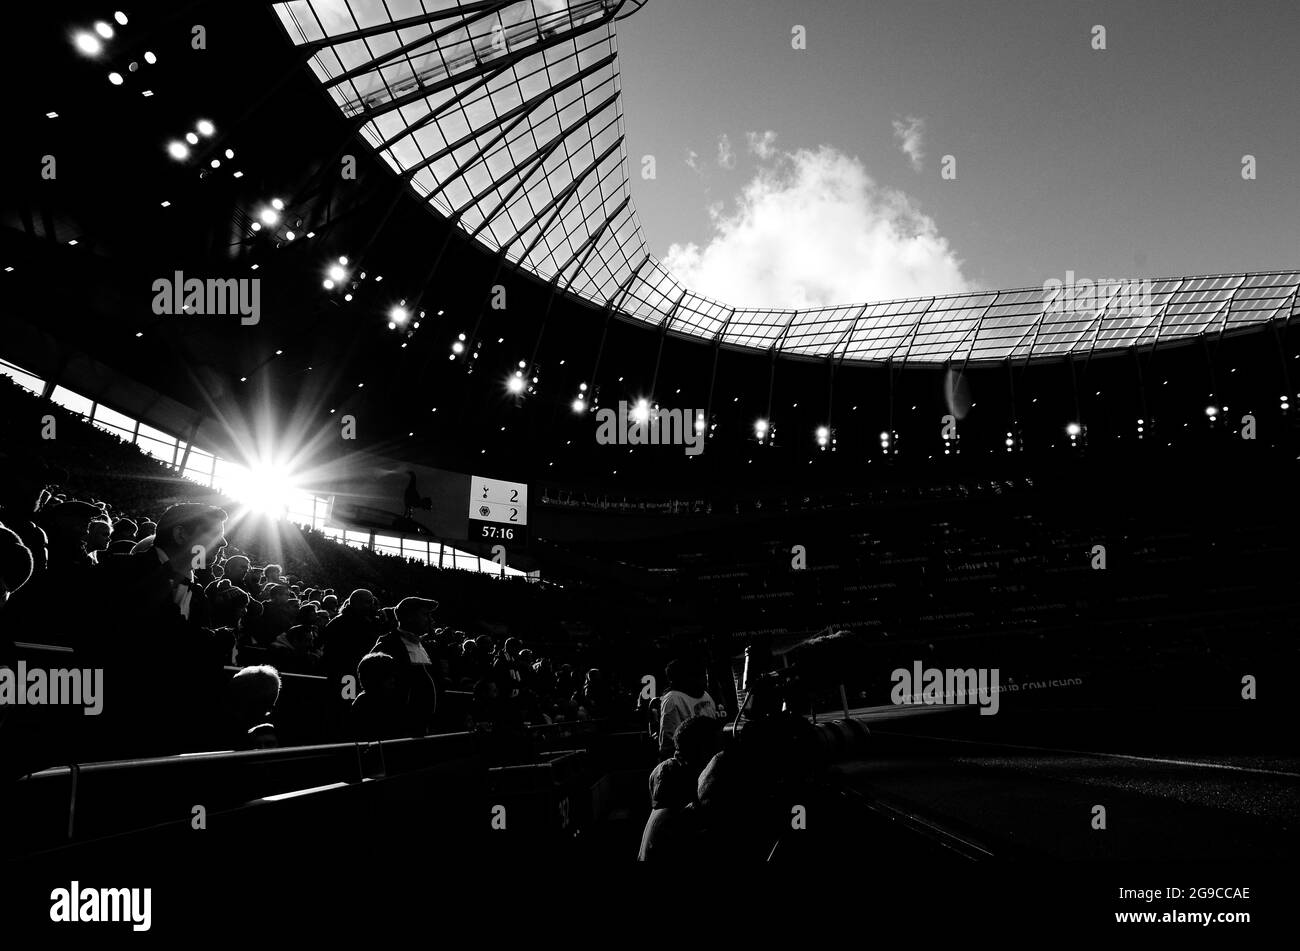 LONDON, ENGLAND - 1. März 2020: Silhouetten von Fans auf den Ständen des Spielortes, die während des Spiels der Premier League 2020/21 zwischen dem Tottenham Hotspur FC und dem Wolverhampton FC im Tottenham Hotspur Stadium abgebildet wurden. Stockfoto